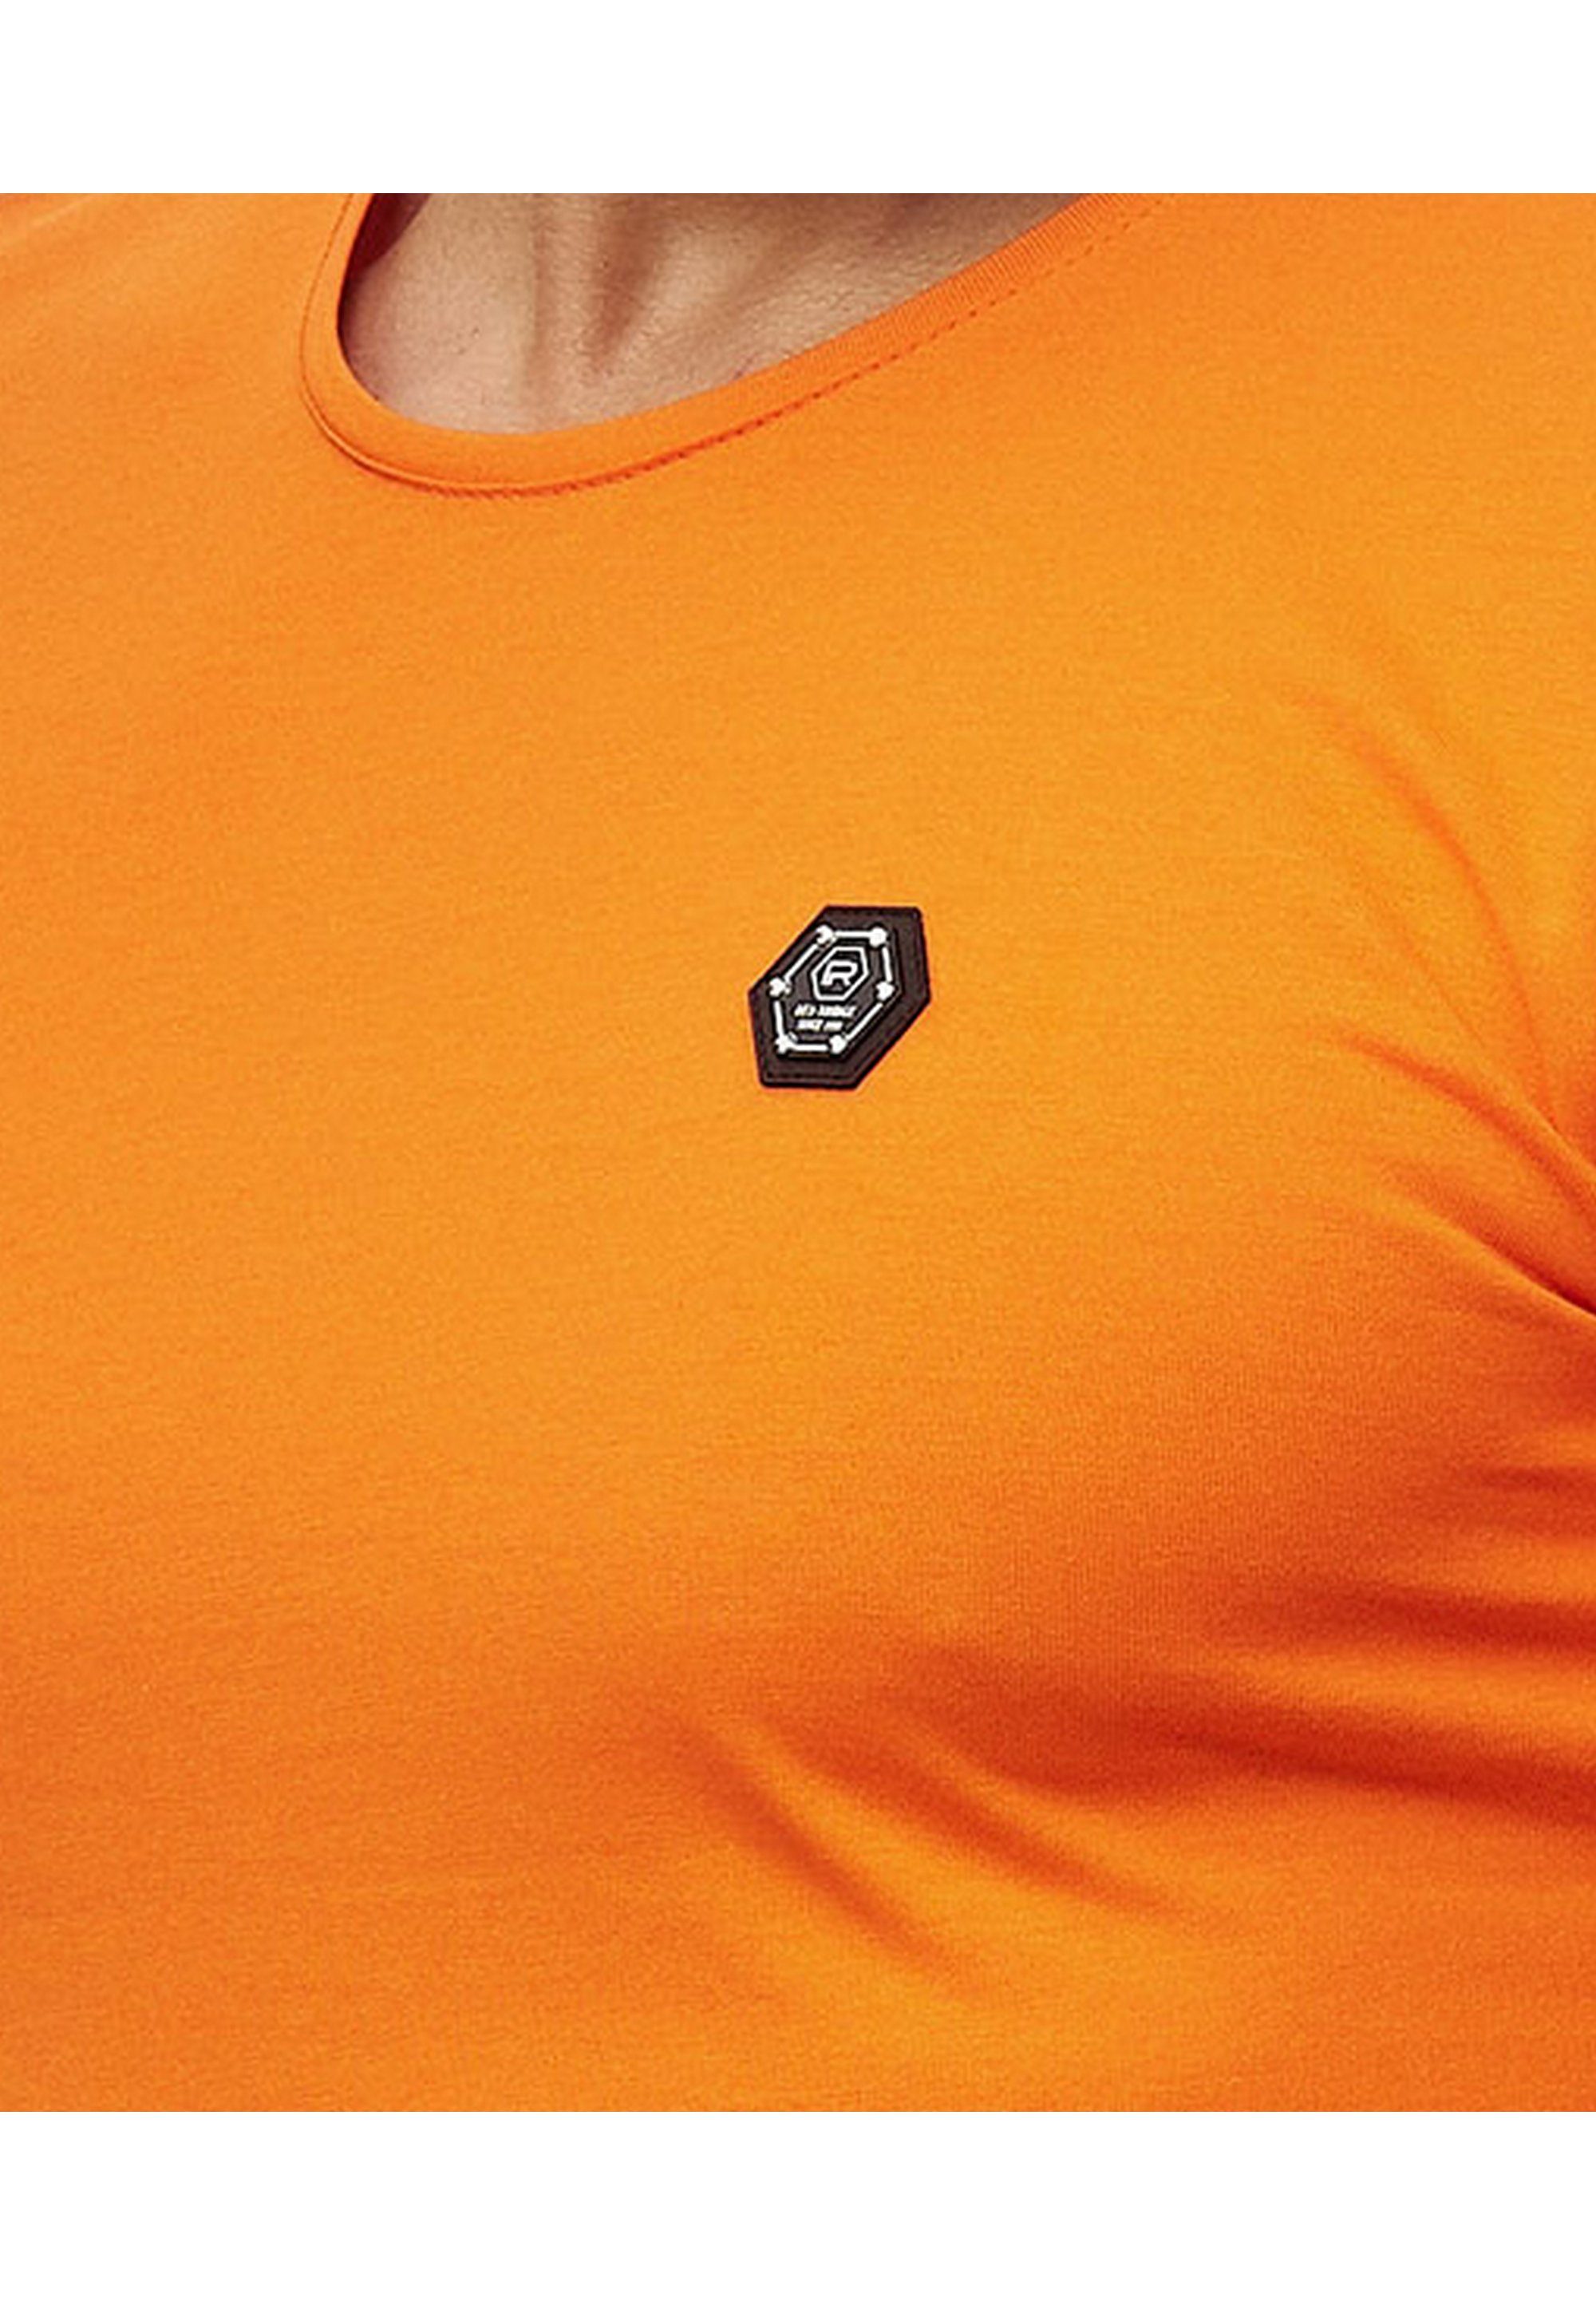 Atlanta RedBridge Brandlogo mit orange T-Shirt sportlichem